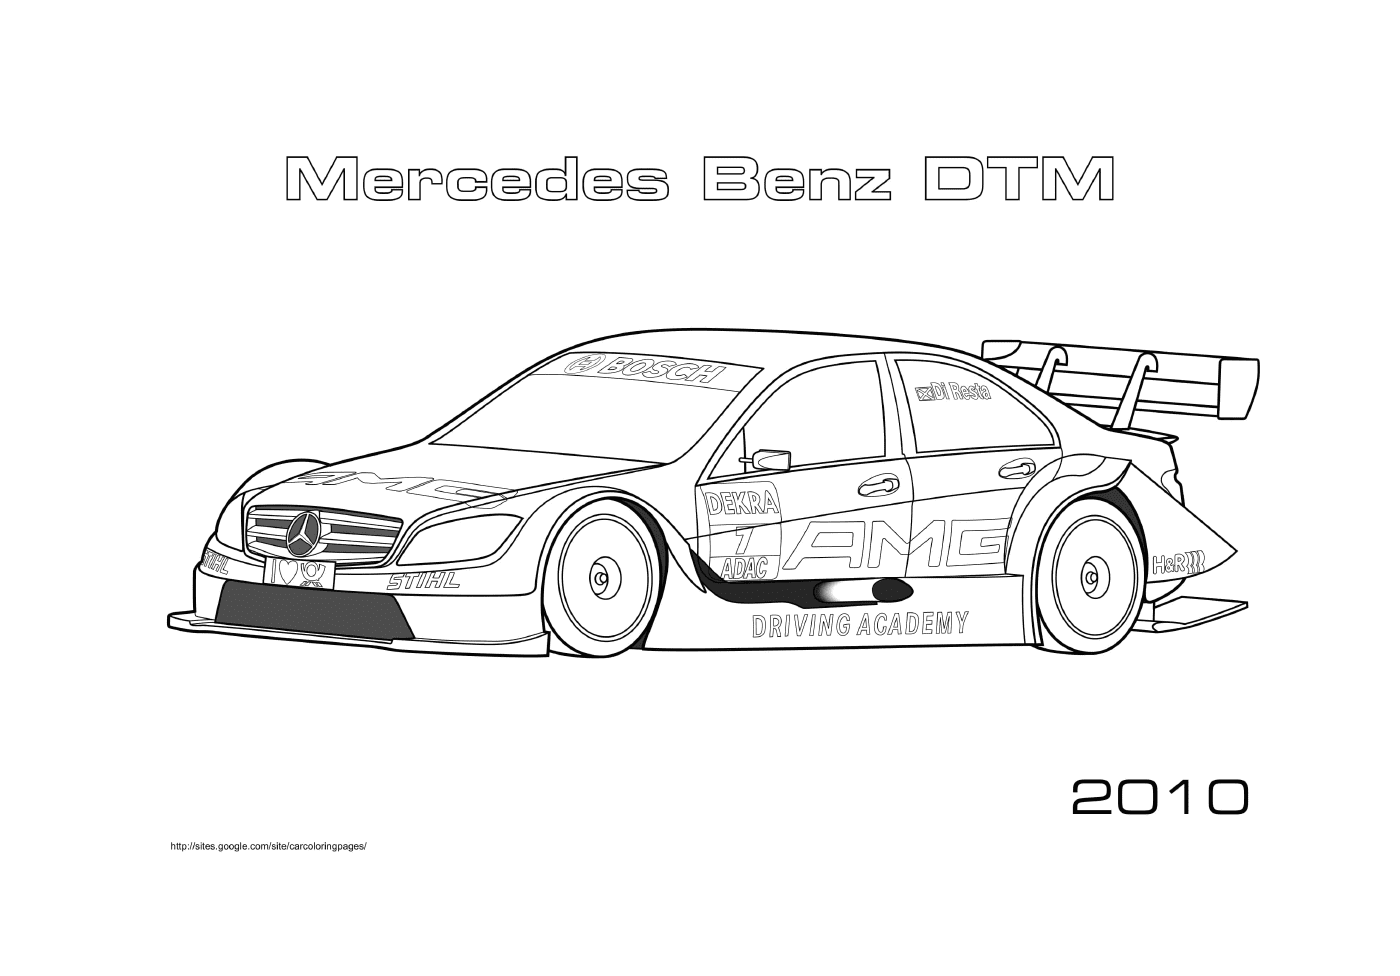  طراز Benz DTM 2010 